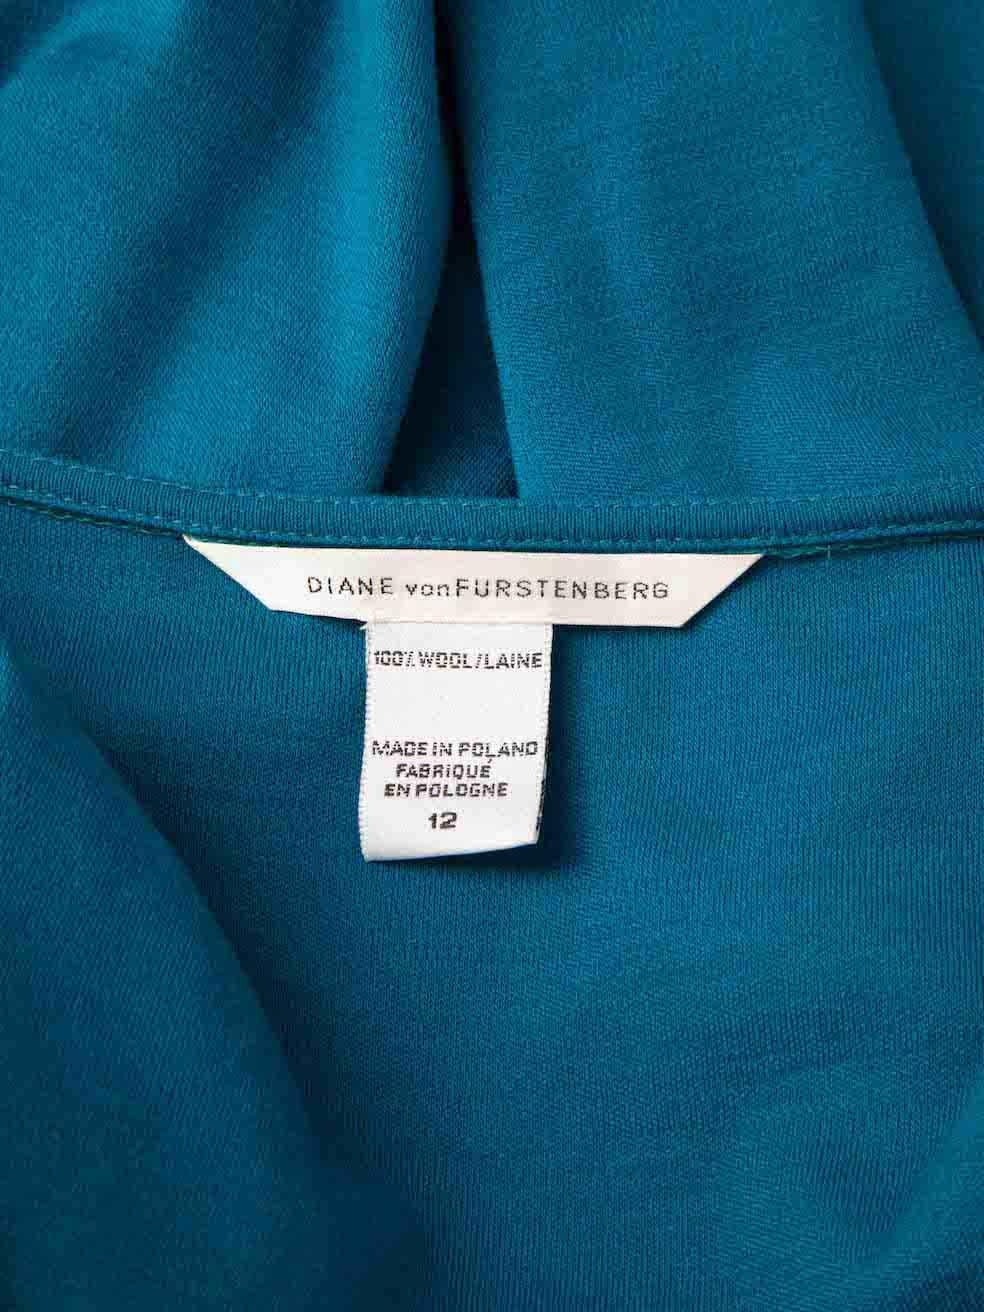 Diane Von Furstenberg Blue Wool Knee Length Dress Size XXL For Sale 2